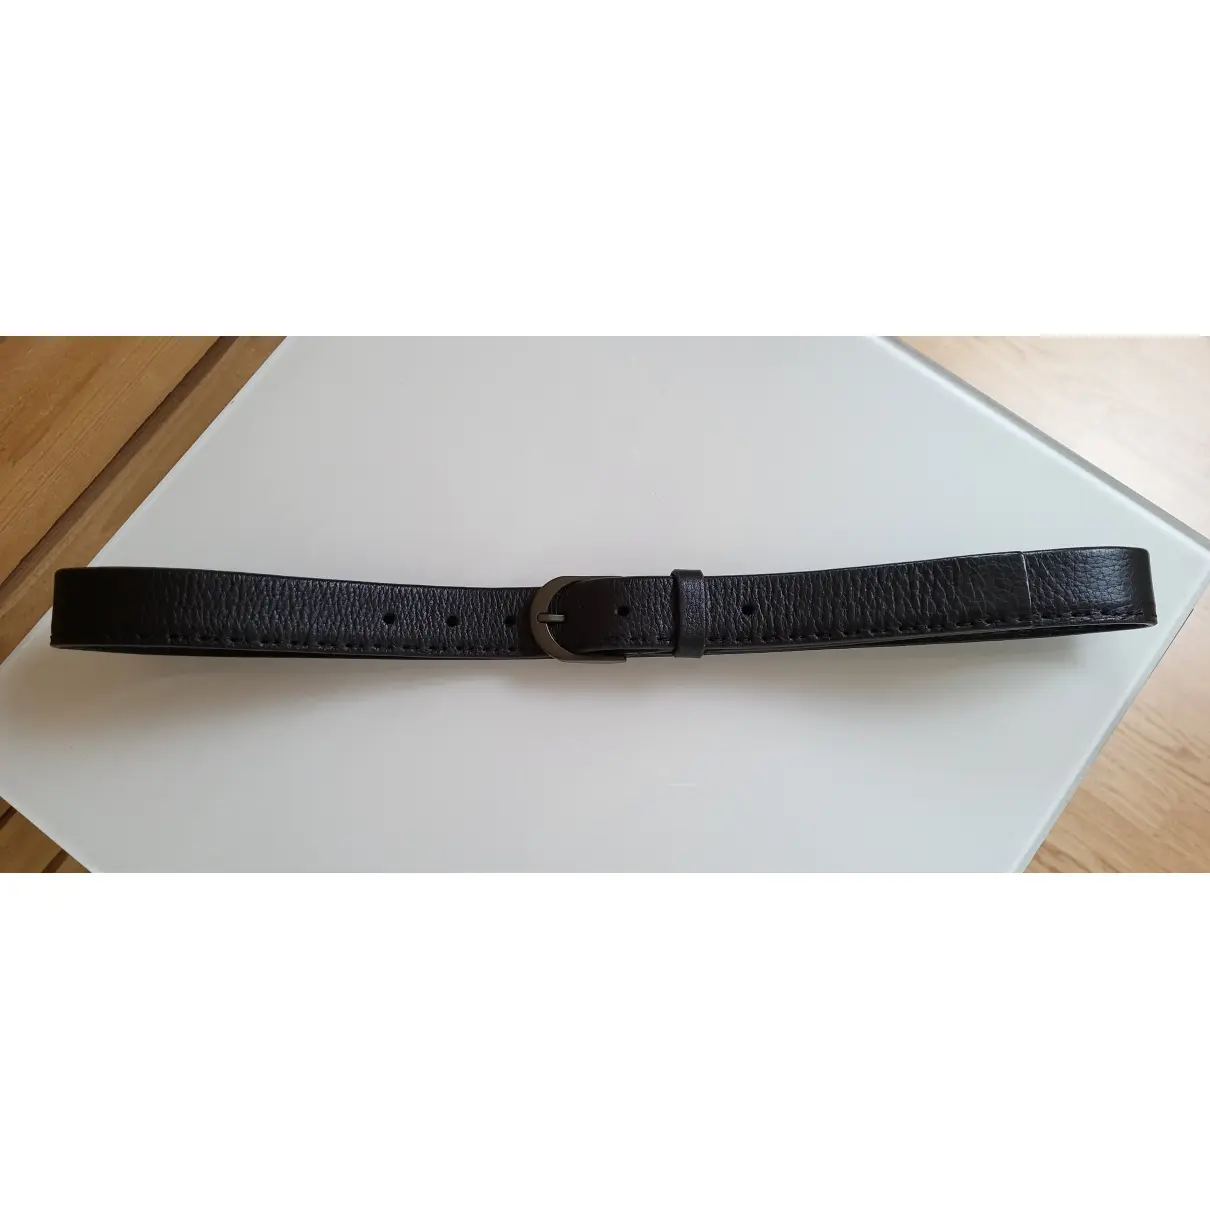 Leather belt Giorgio Armani